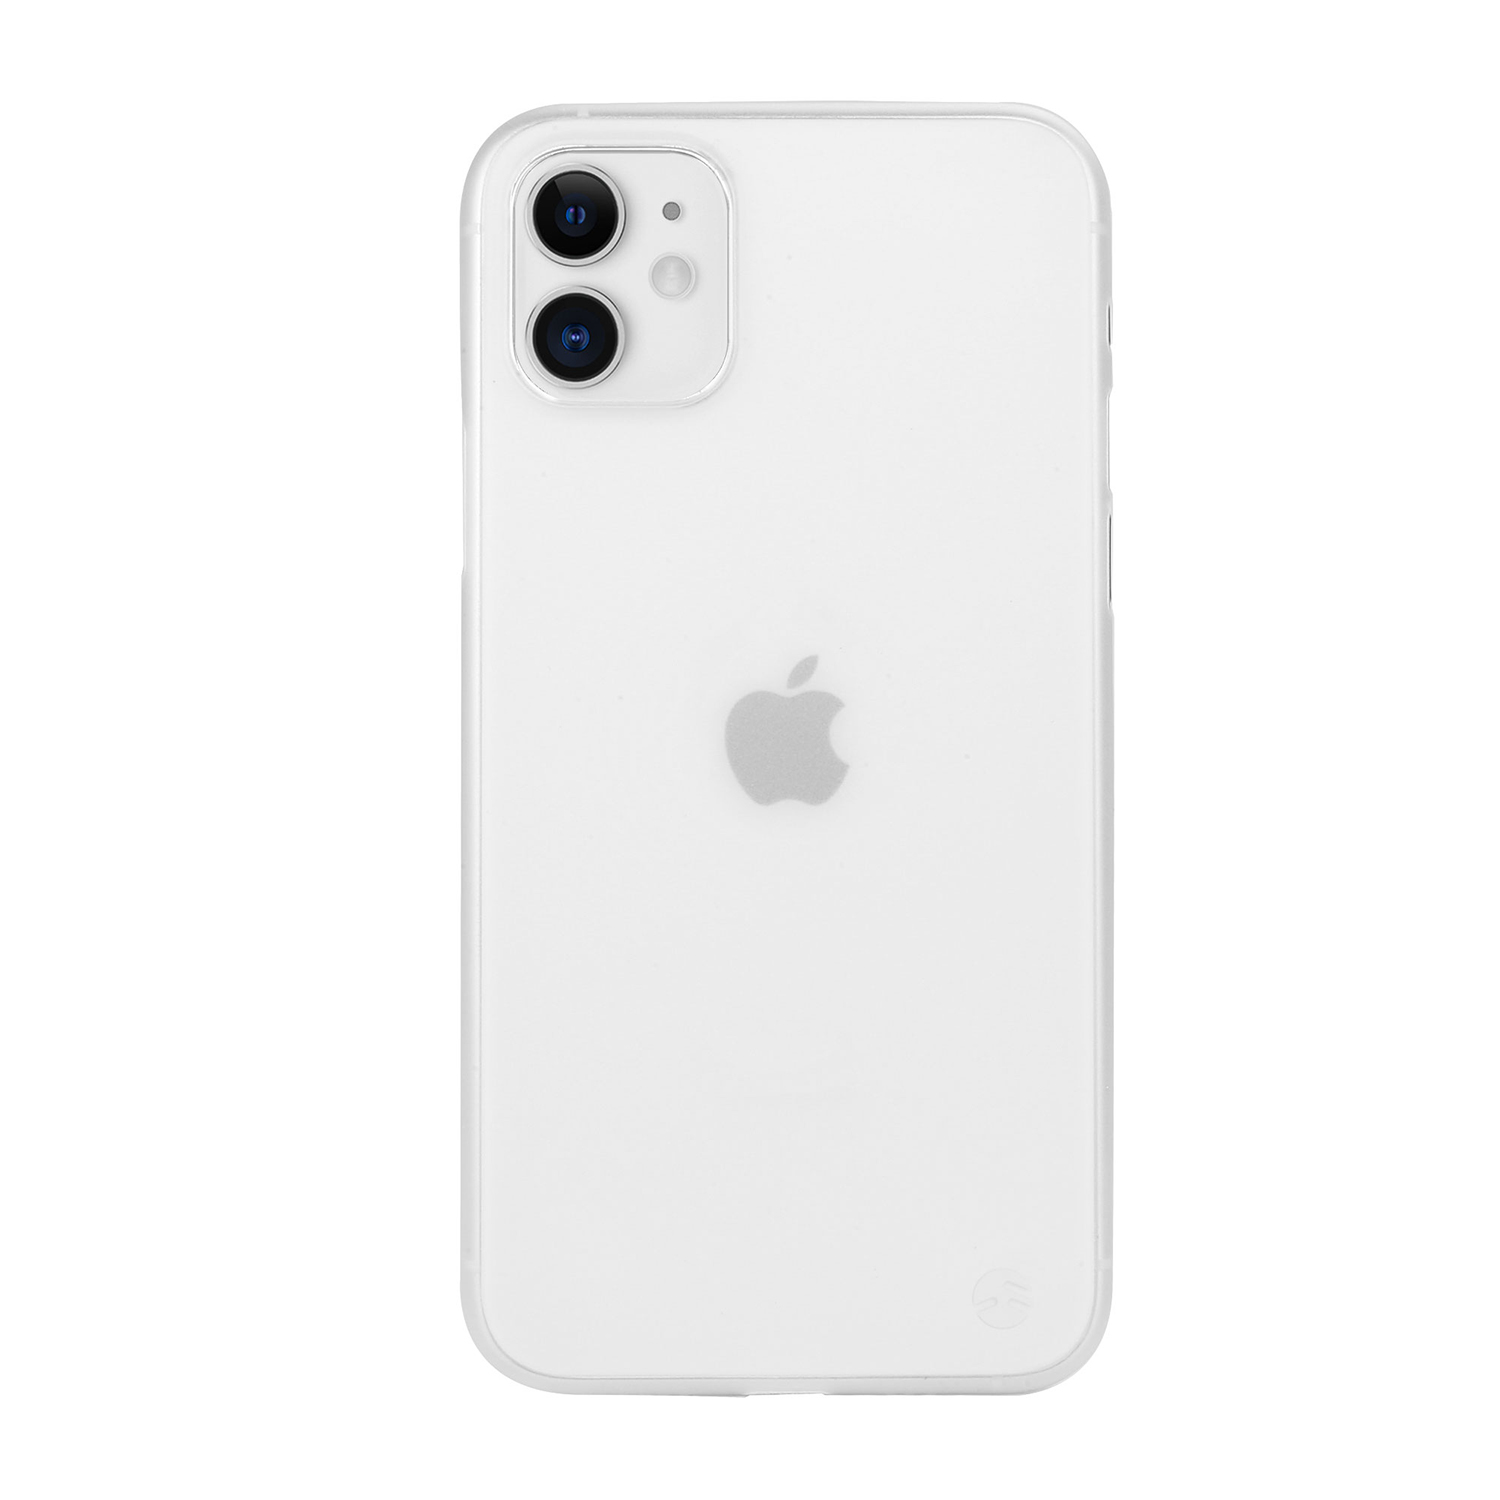 Айфон 11 тольятти. Iphone 11 Pro White. Чехол Apple iphone 11 Silicone Case White. Iphone 11 Pro Max White. Iphone 13 Pro Max белый чехол.